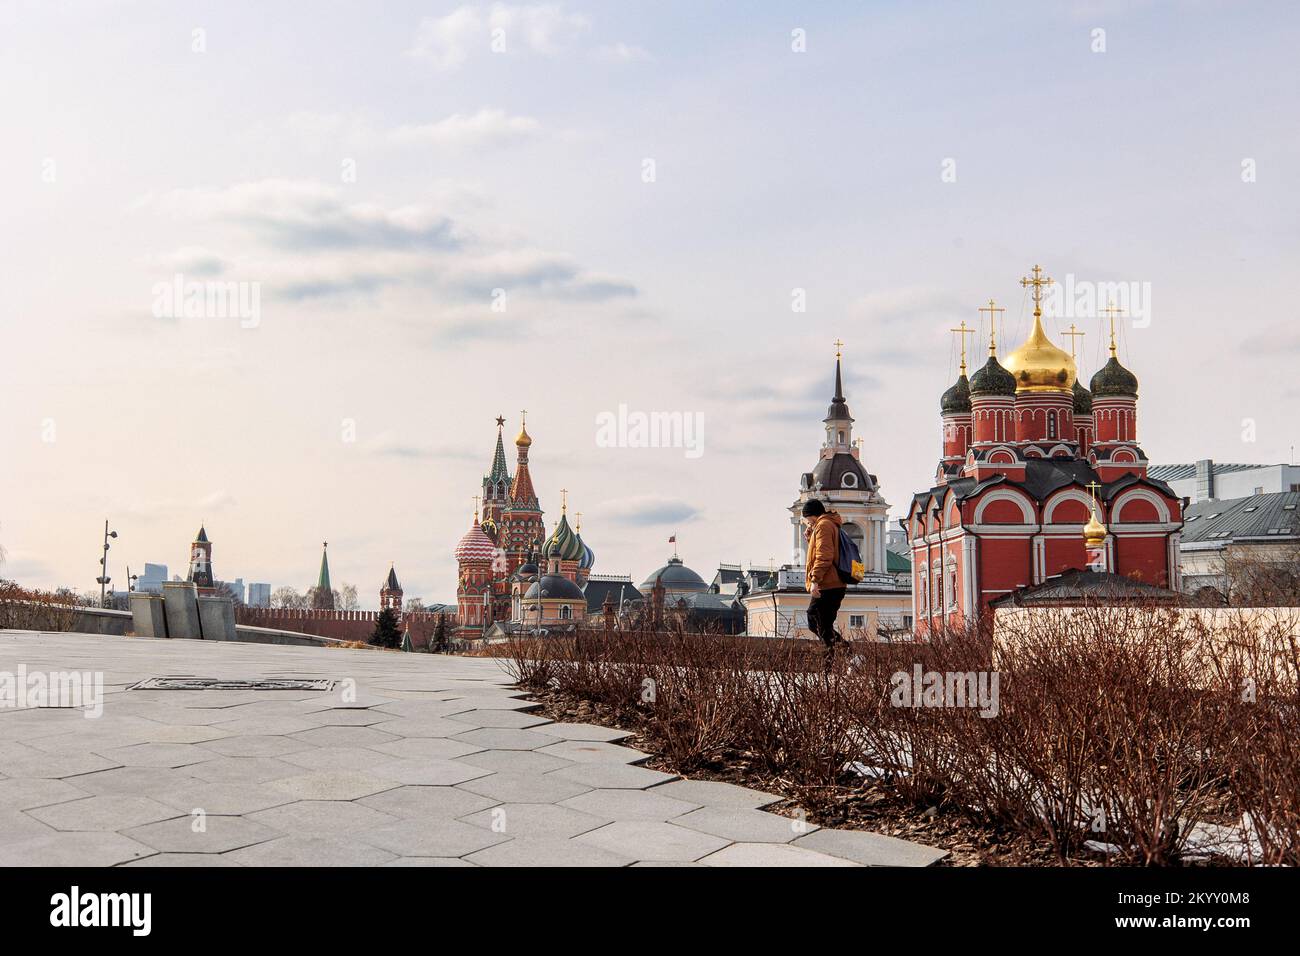 Moscou, Russie - 1 avril 2022 : vue sur le parc Zaryadye à Moscou, Russie. Église du signe de la mère de Dieu, monastère de Znamensky. Photo de haute qualité Banque D'Images